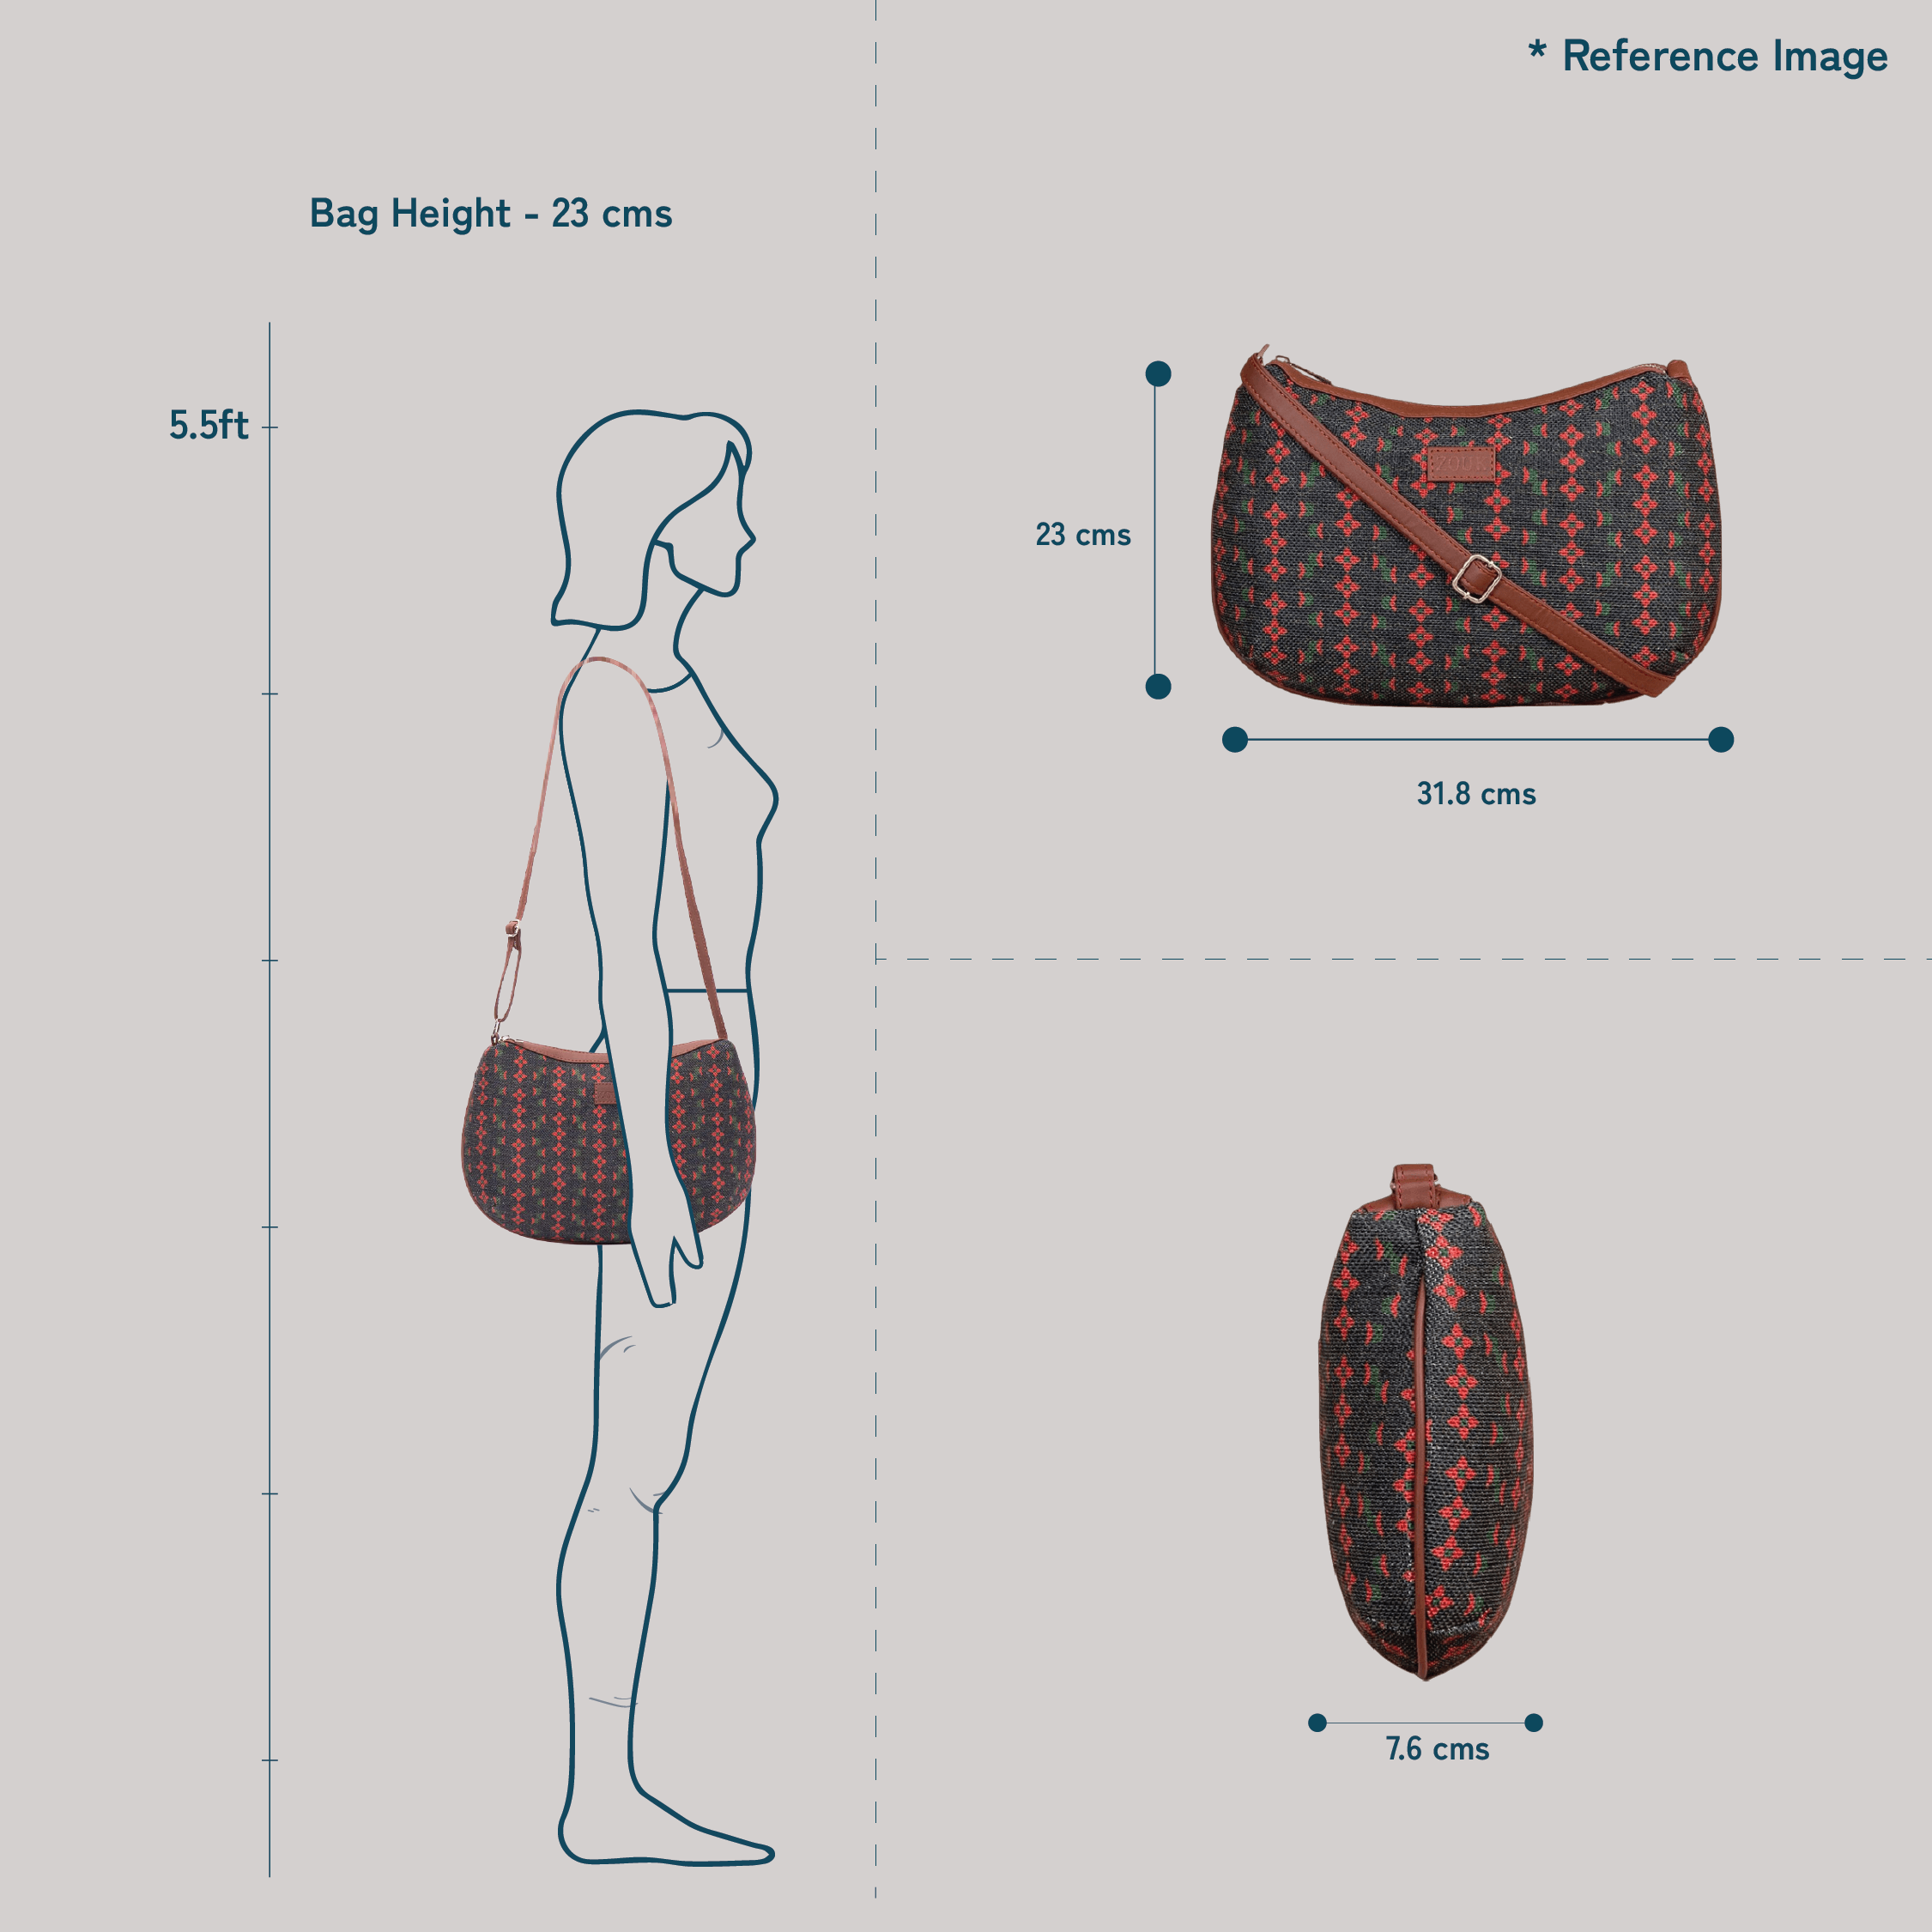 Royal Indian Peacock Print Structured Shoulder Bag